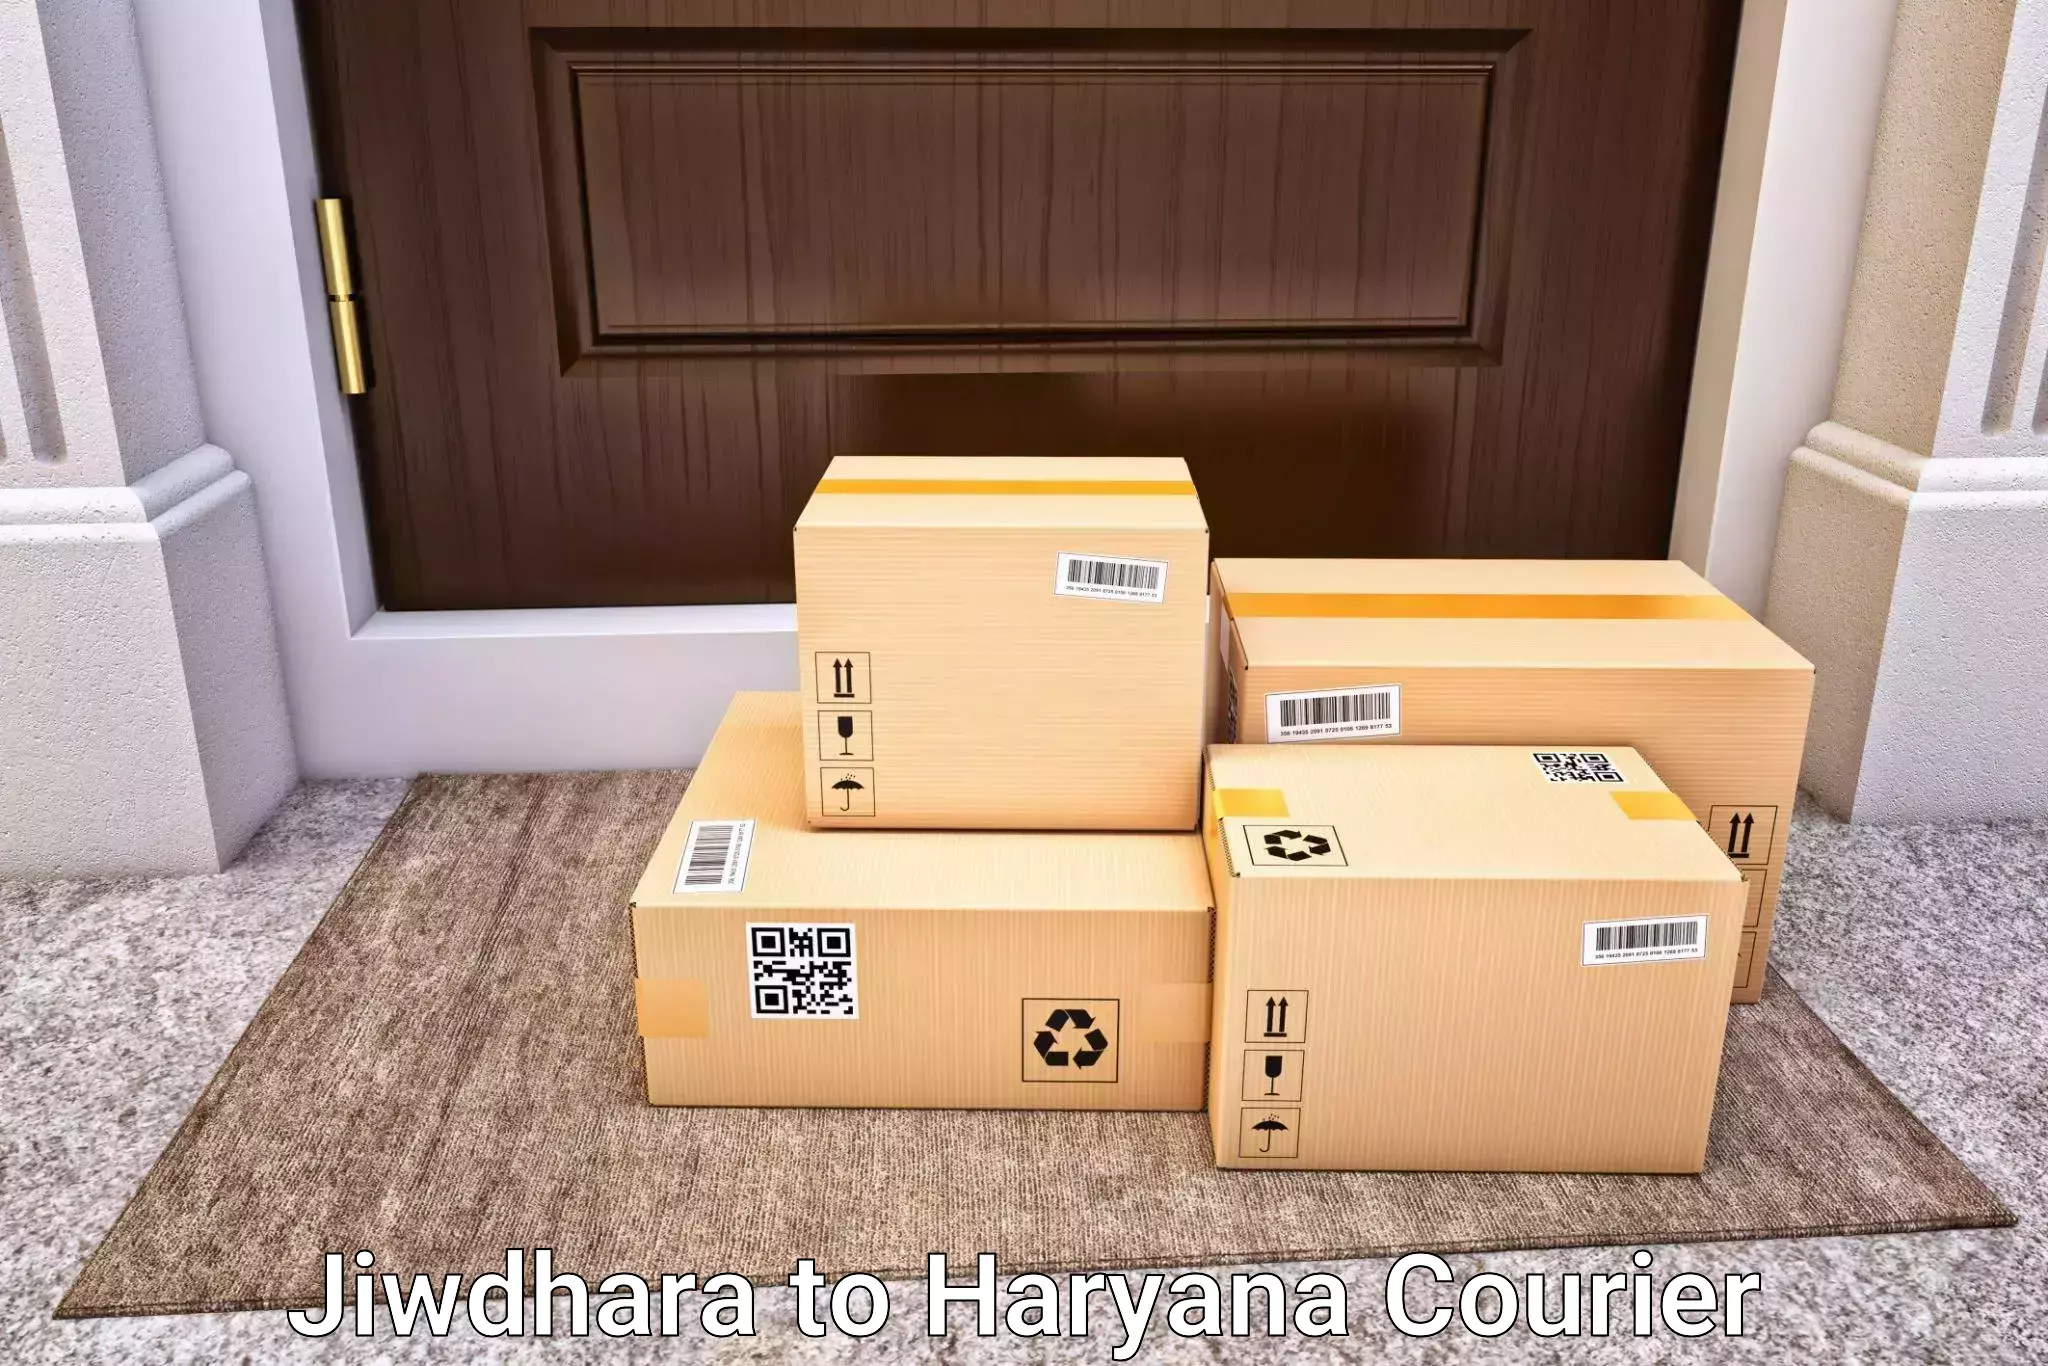 Luggage transport tips Jiwdhara to Haryana